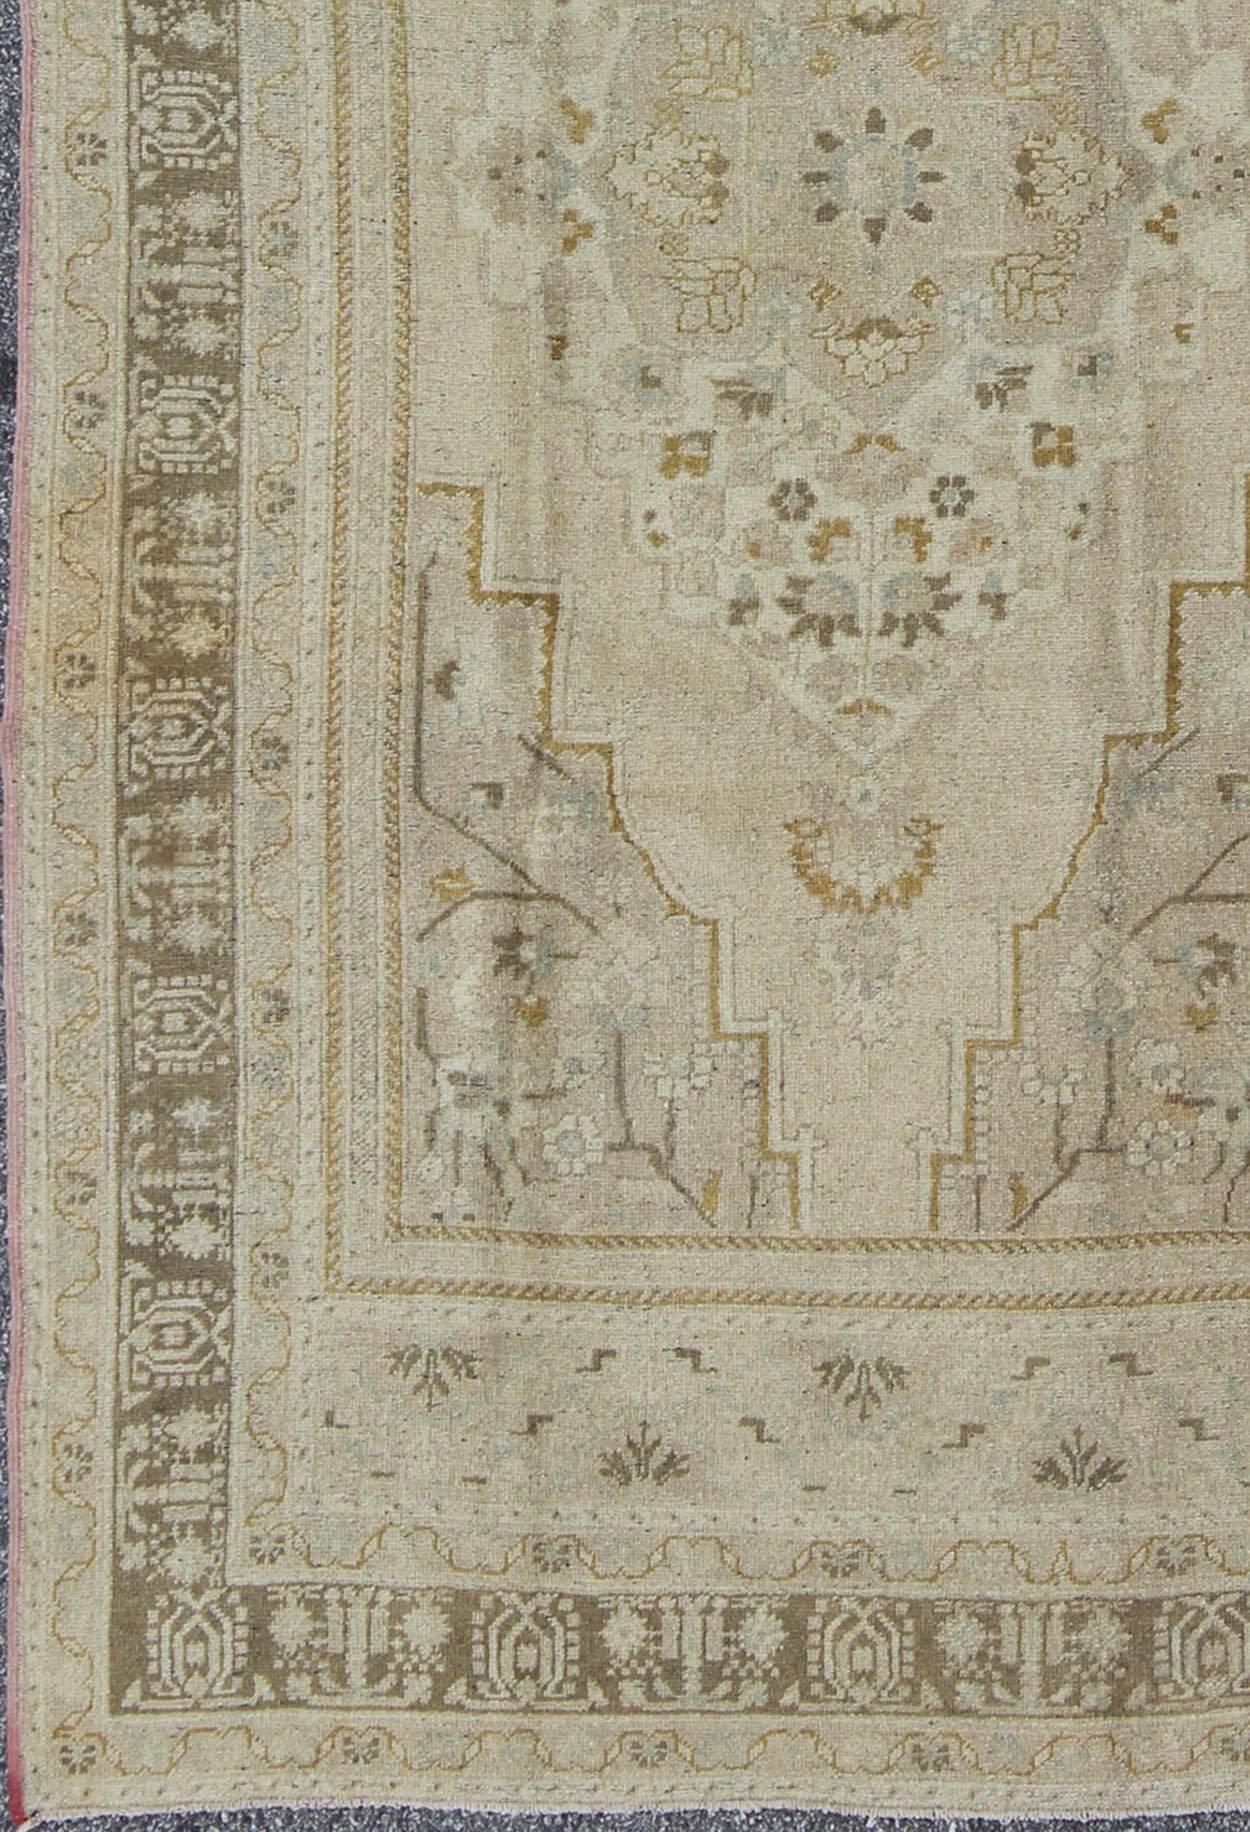 Mid-Century Vintage Oushak Teppich aus der Türkei mit floralem geometrischem Medaillon, Teppich mtu-112992, Herkunftsland / Art: Türkei / Oushak, um die Mitte des 20. Jahrhunderts

Dieser verblasste alte türkische Oushak-Teppich (etwa Mitte des 20.